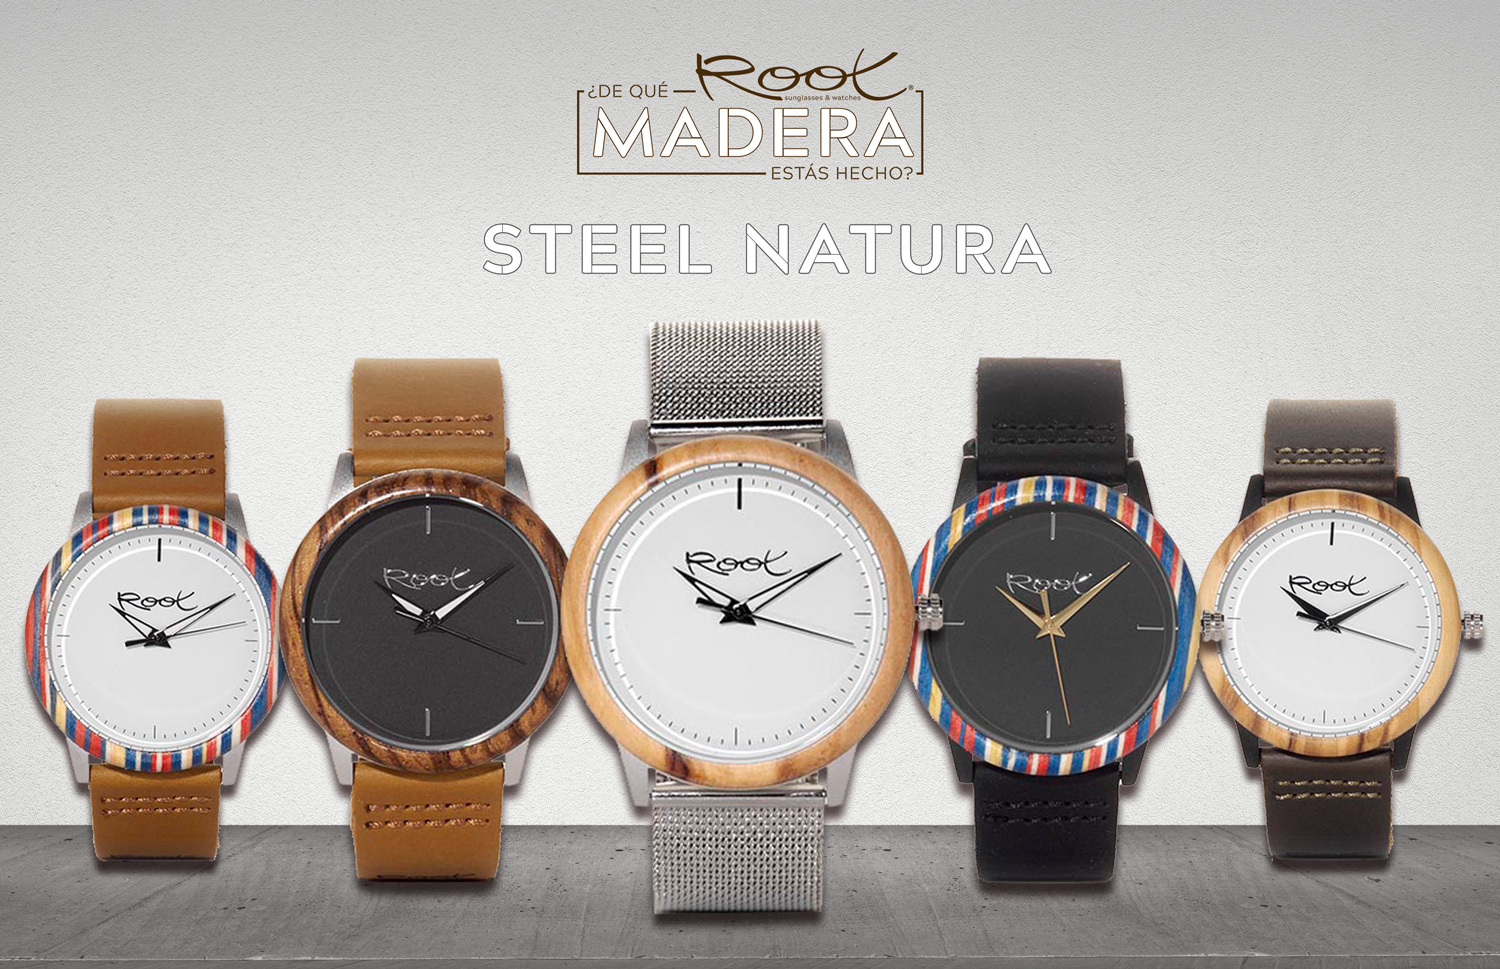 Steel Natura: Lo nuevo en relojes de Madera de Root. Root Sunglasses - Gafas y Relojes de Madera Natural.